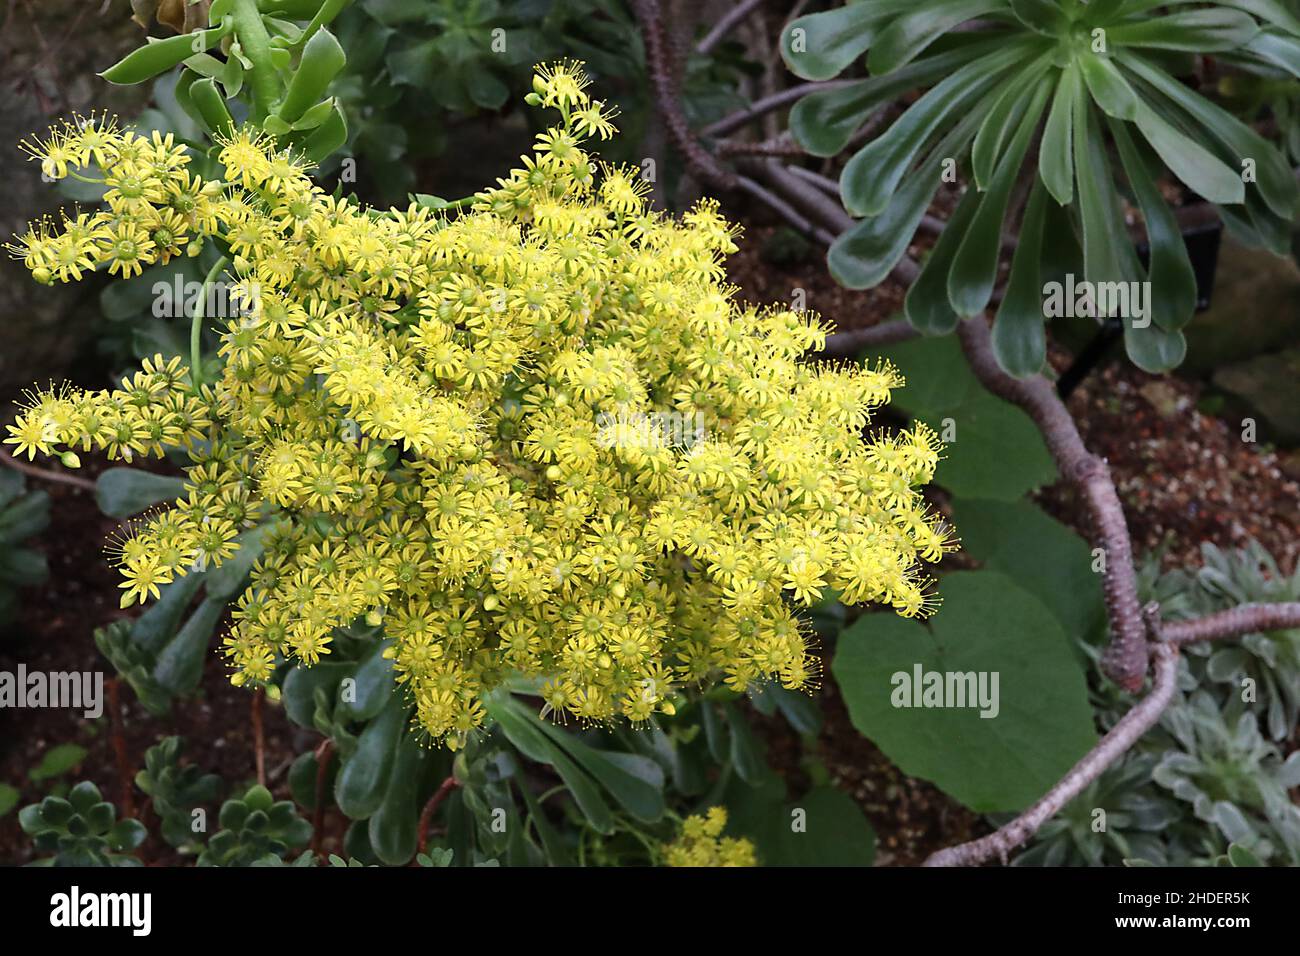 Aeonium arboreum Tree aeonium – dichte Trauben von gelben Gänseblümchen-ähnlichen Blüten, glänzende Spatellblätter, Januar, England, Großbritannien Stockfoto